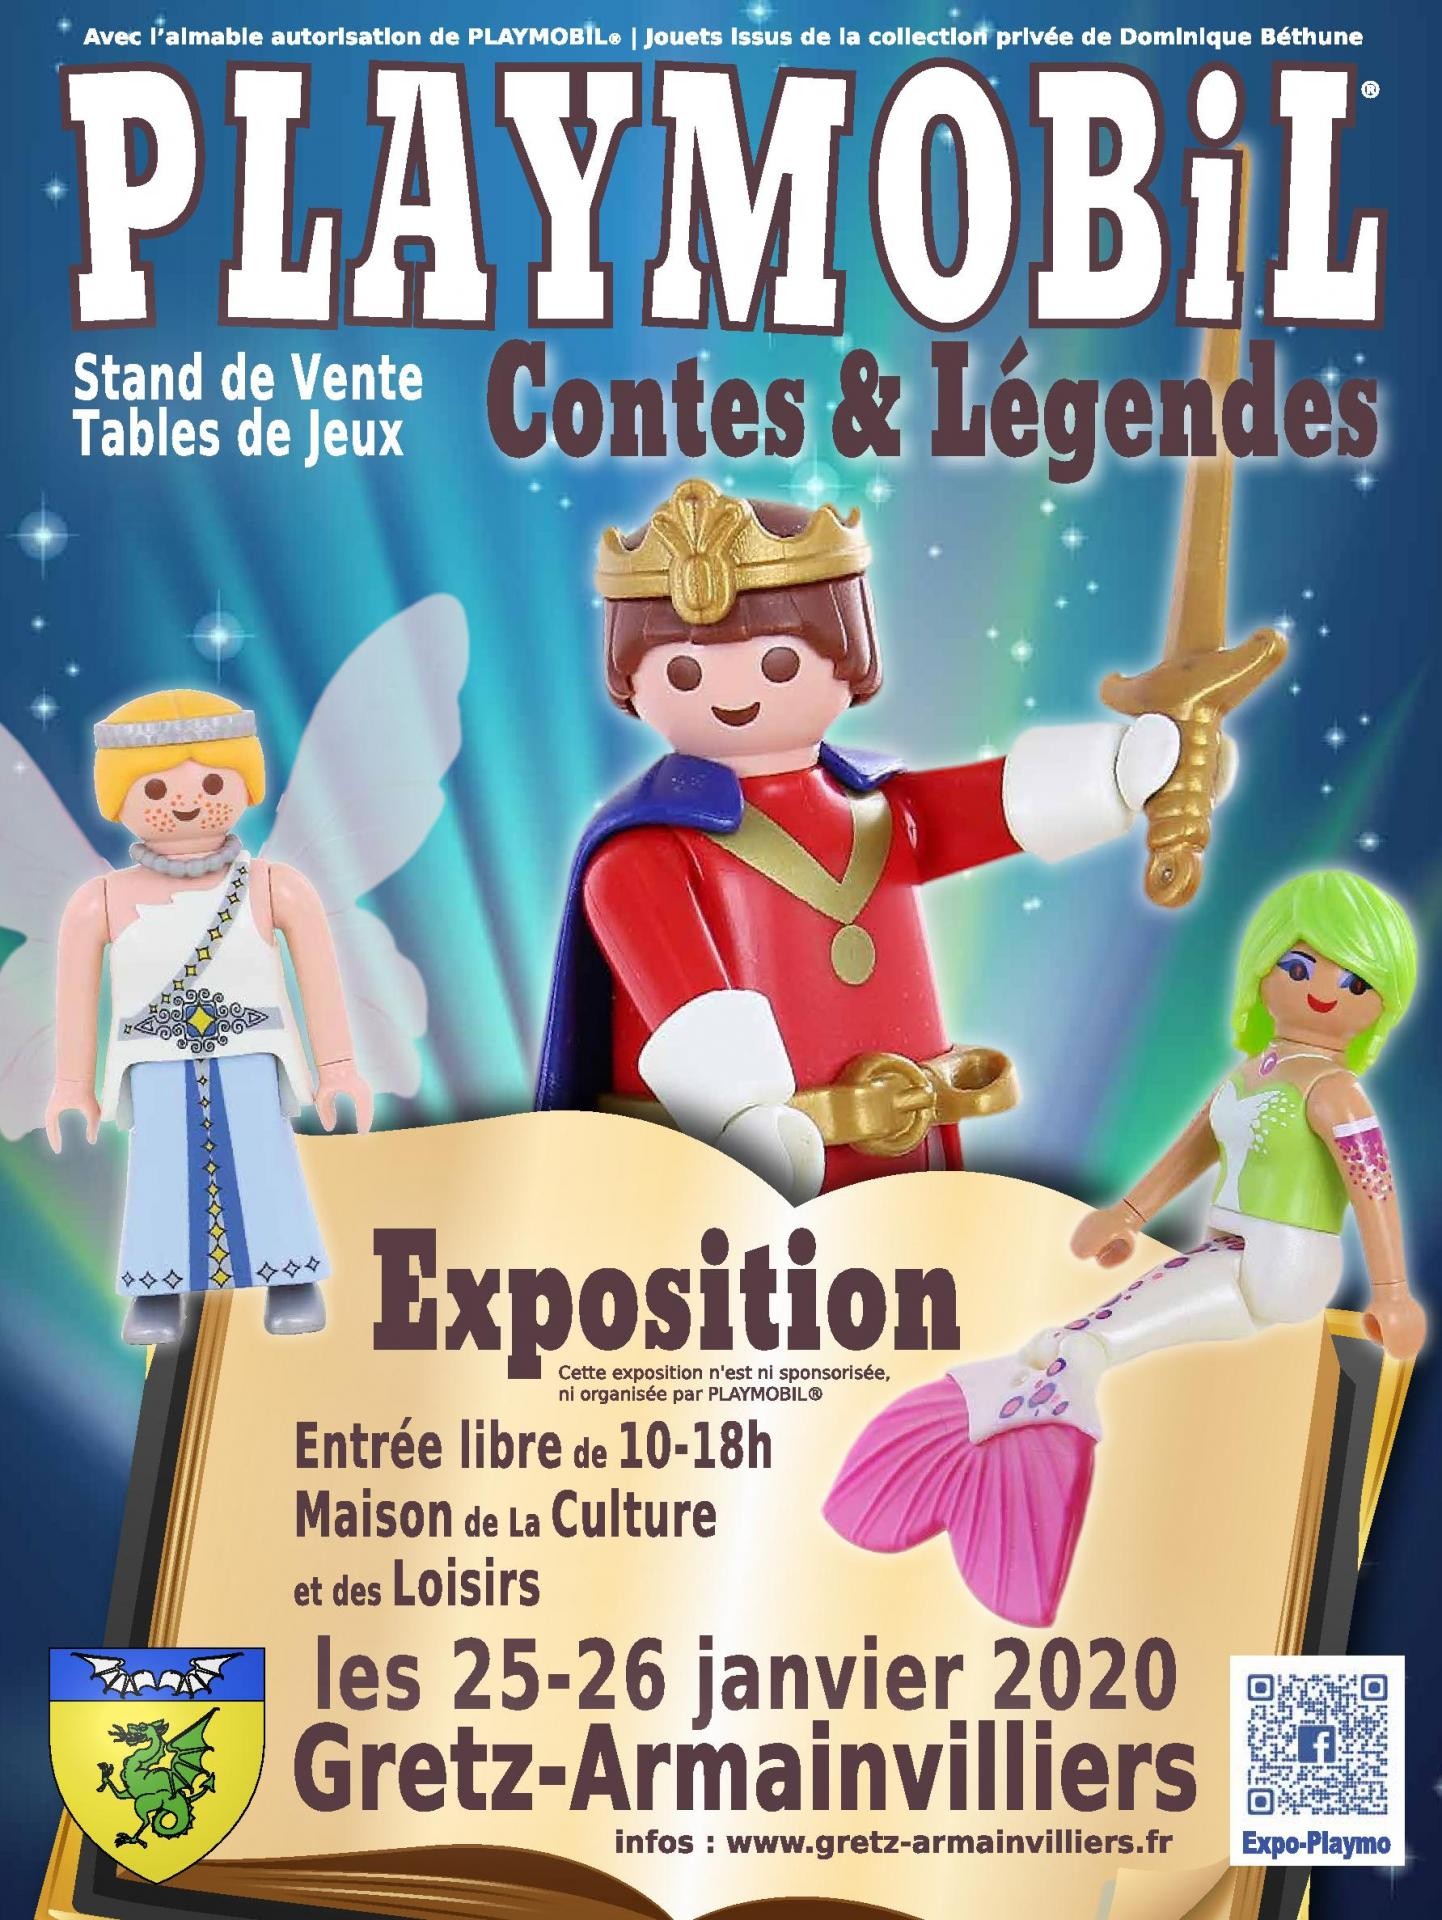 Affiche exposition playmobil gretz armainvilliers 2020 dominique bethune page 001